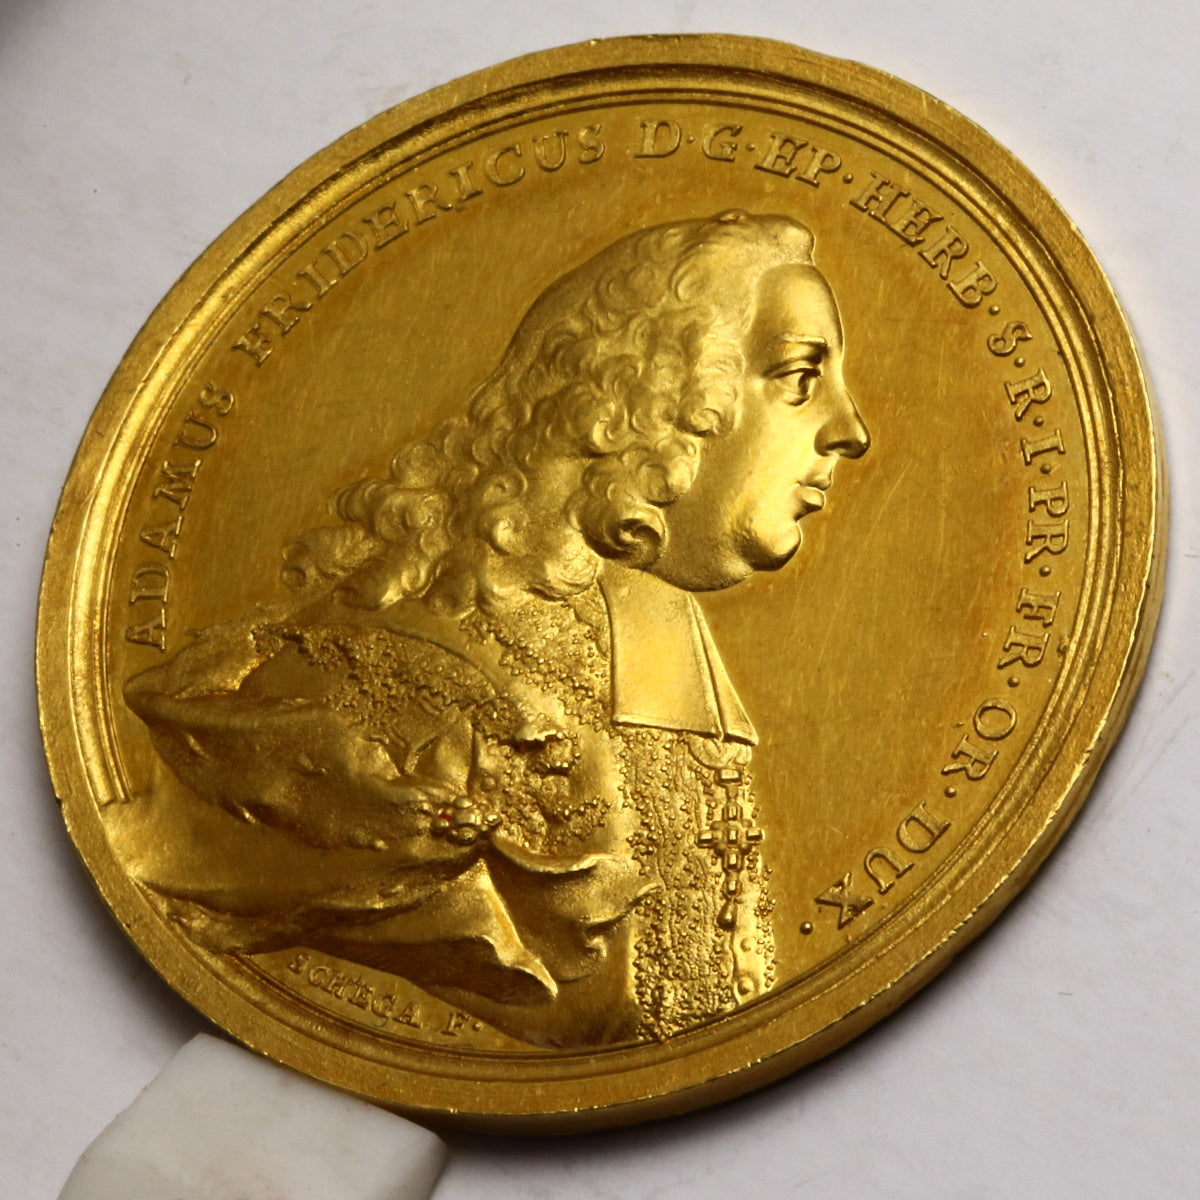 ドイツ 1775年アダム・フリードリヒ 12ダカットサイズ 金メダル(未鑑定)